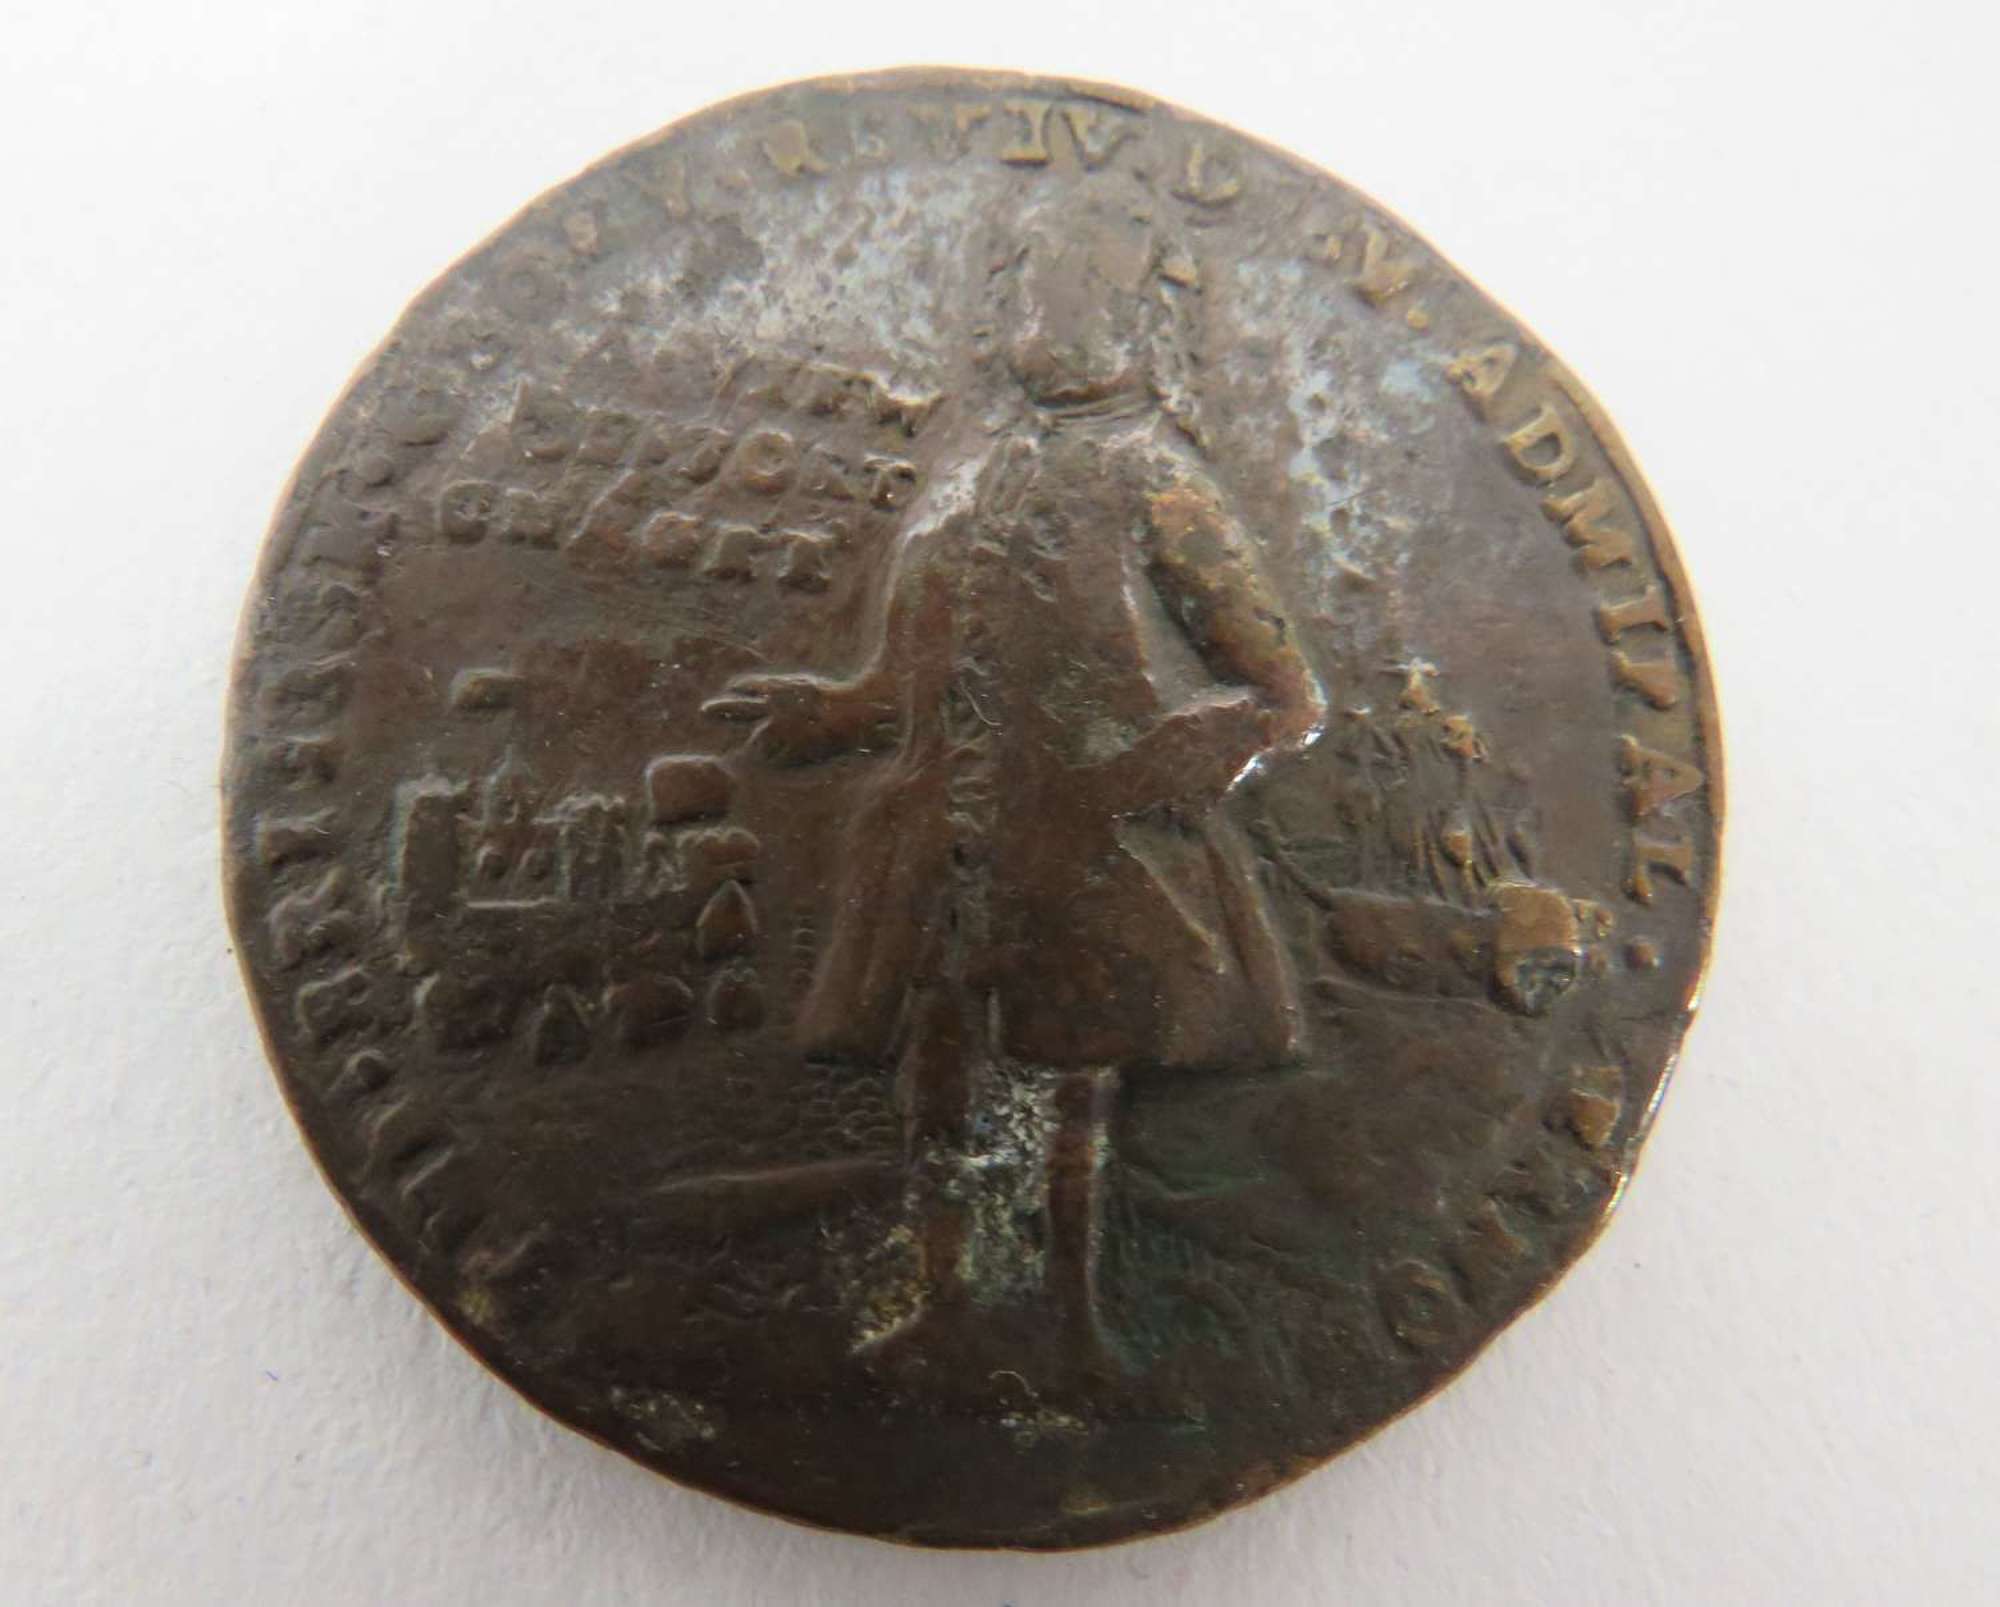 Admiral Vernon, Portobello Medal, 22nd November 1739